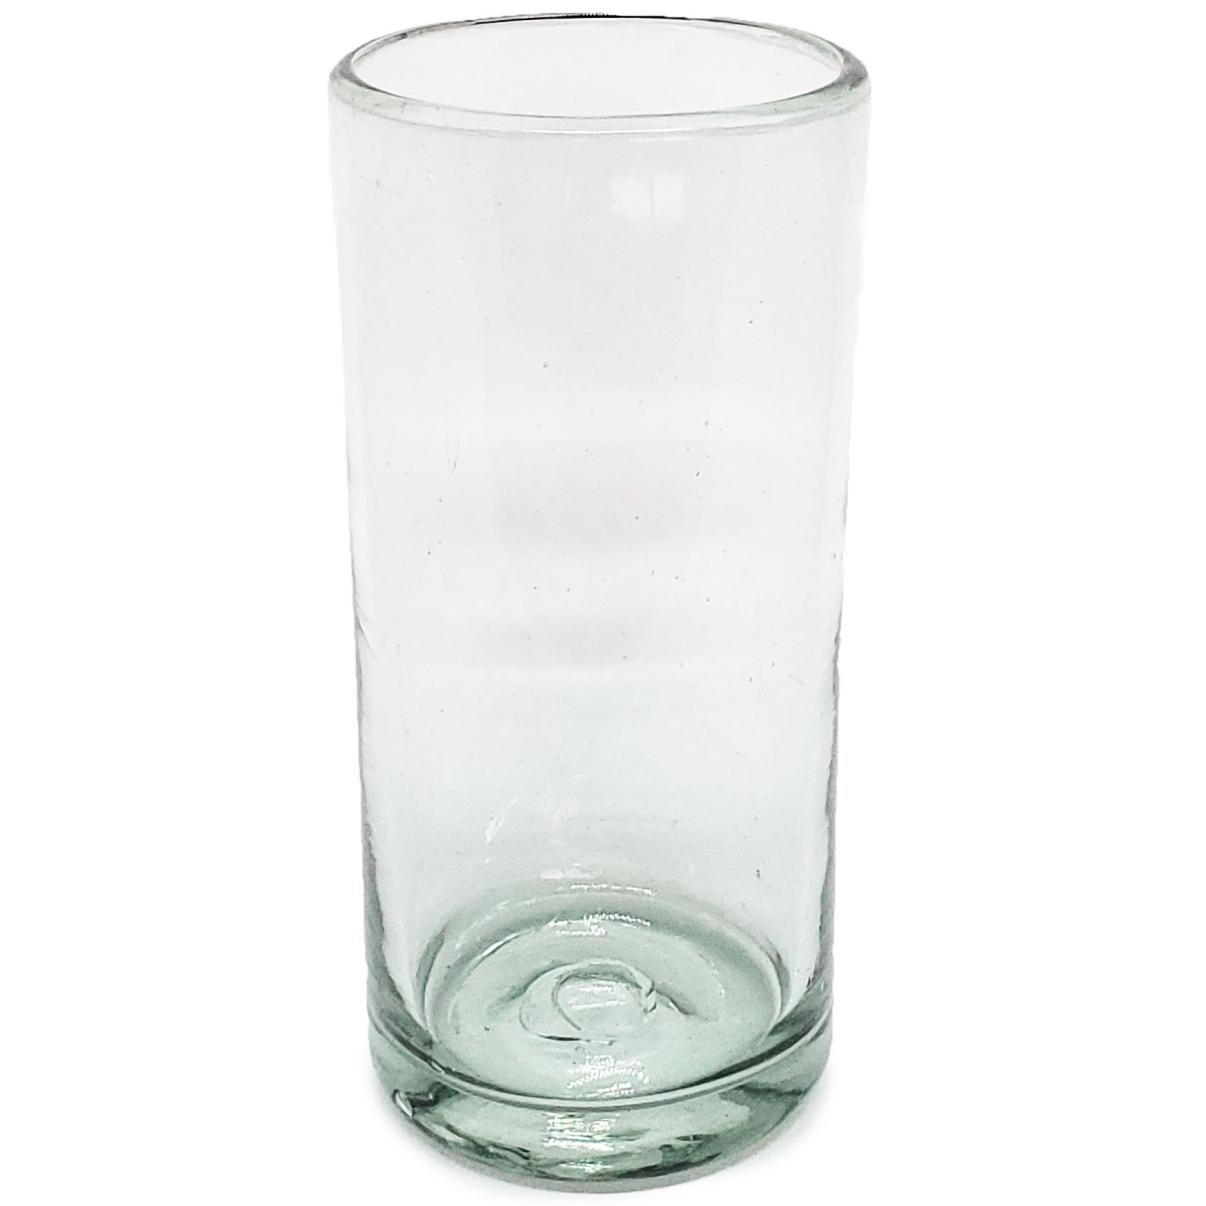 Vasos de Vidrio Soplado al Mayoreo / vasos Jumbo transparentes / ste clsico juego de vasos jumbo est hecho con vidrio reciclado. Contiene pequeas burbujas atrapadas en el vaso.